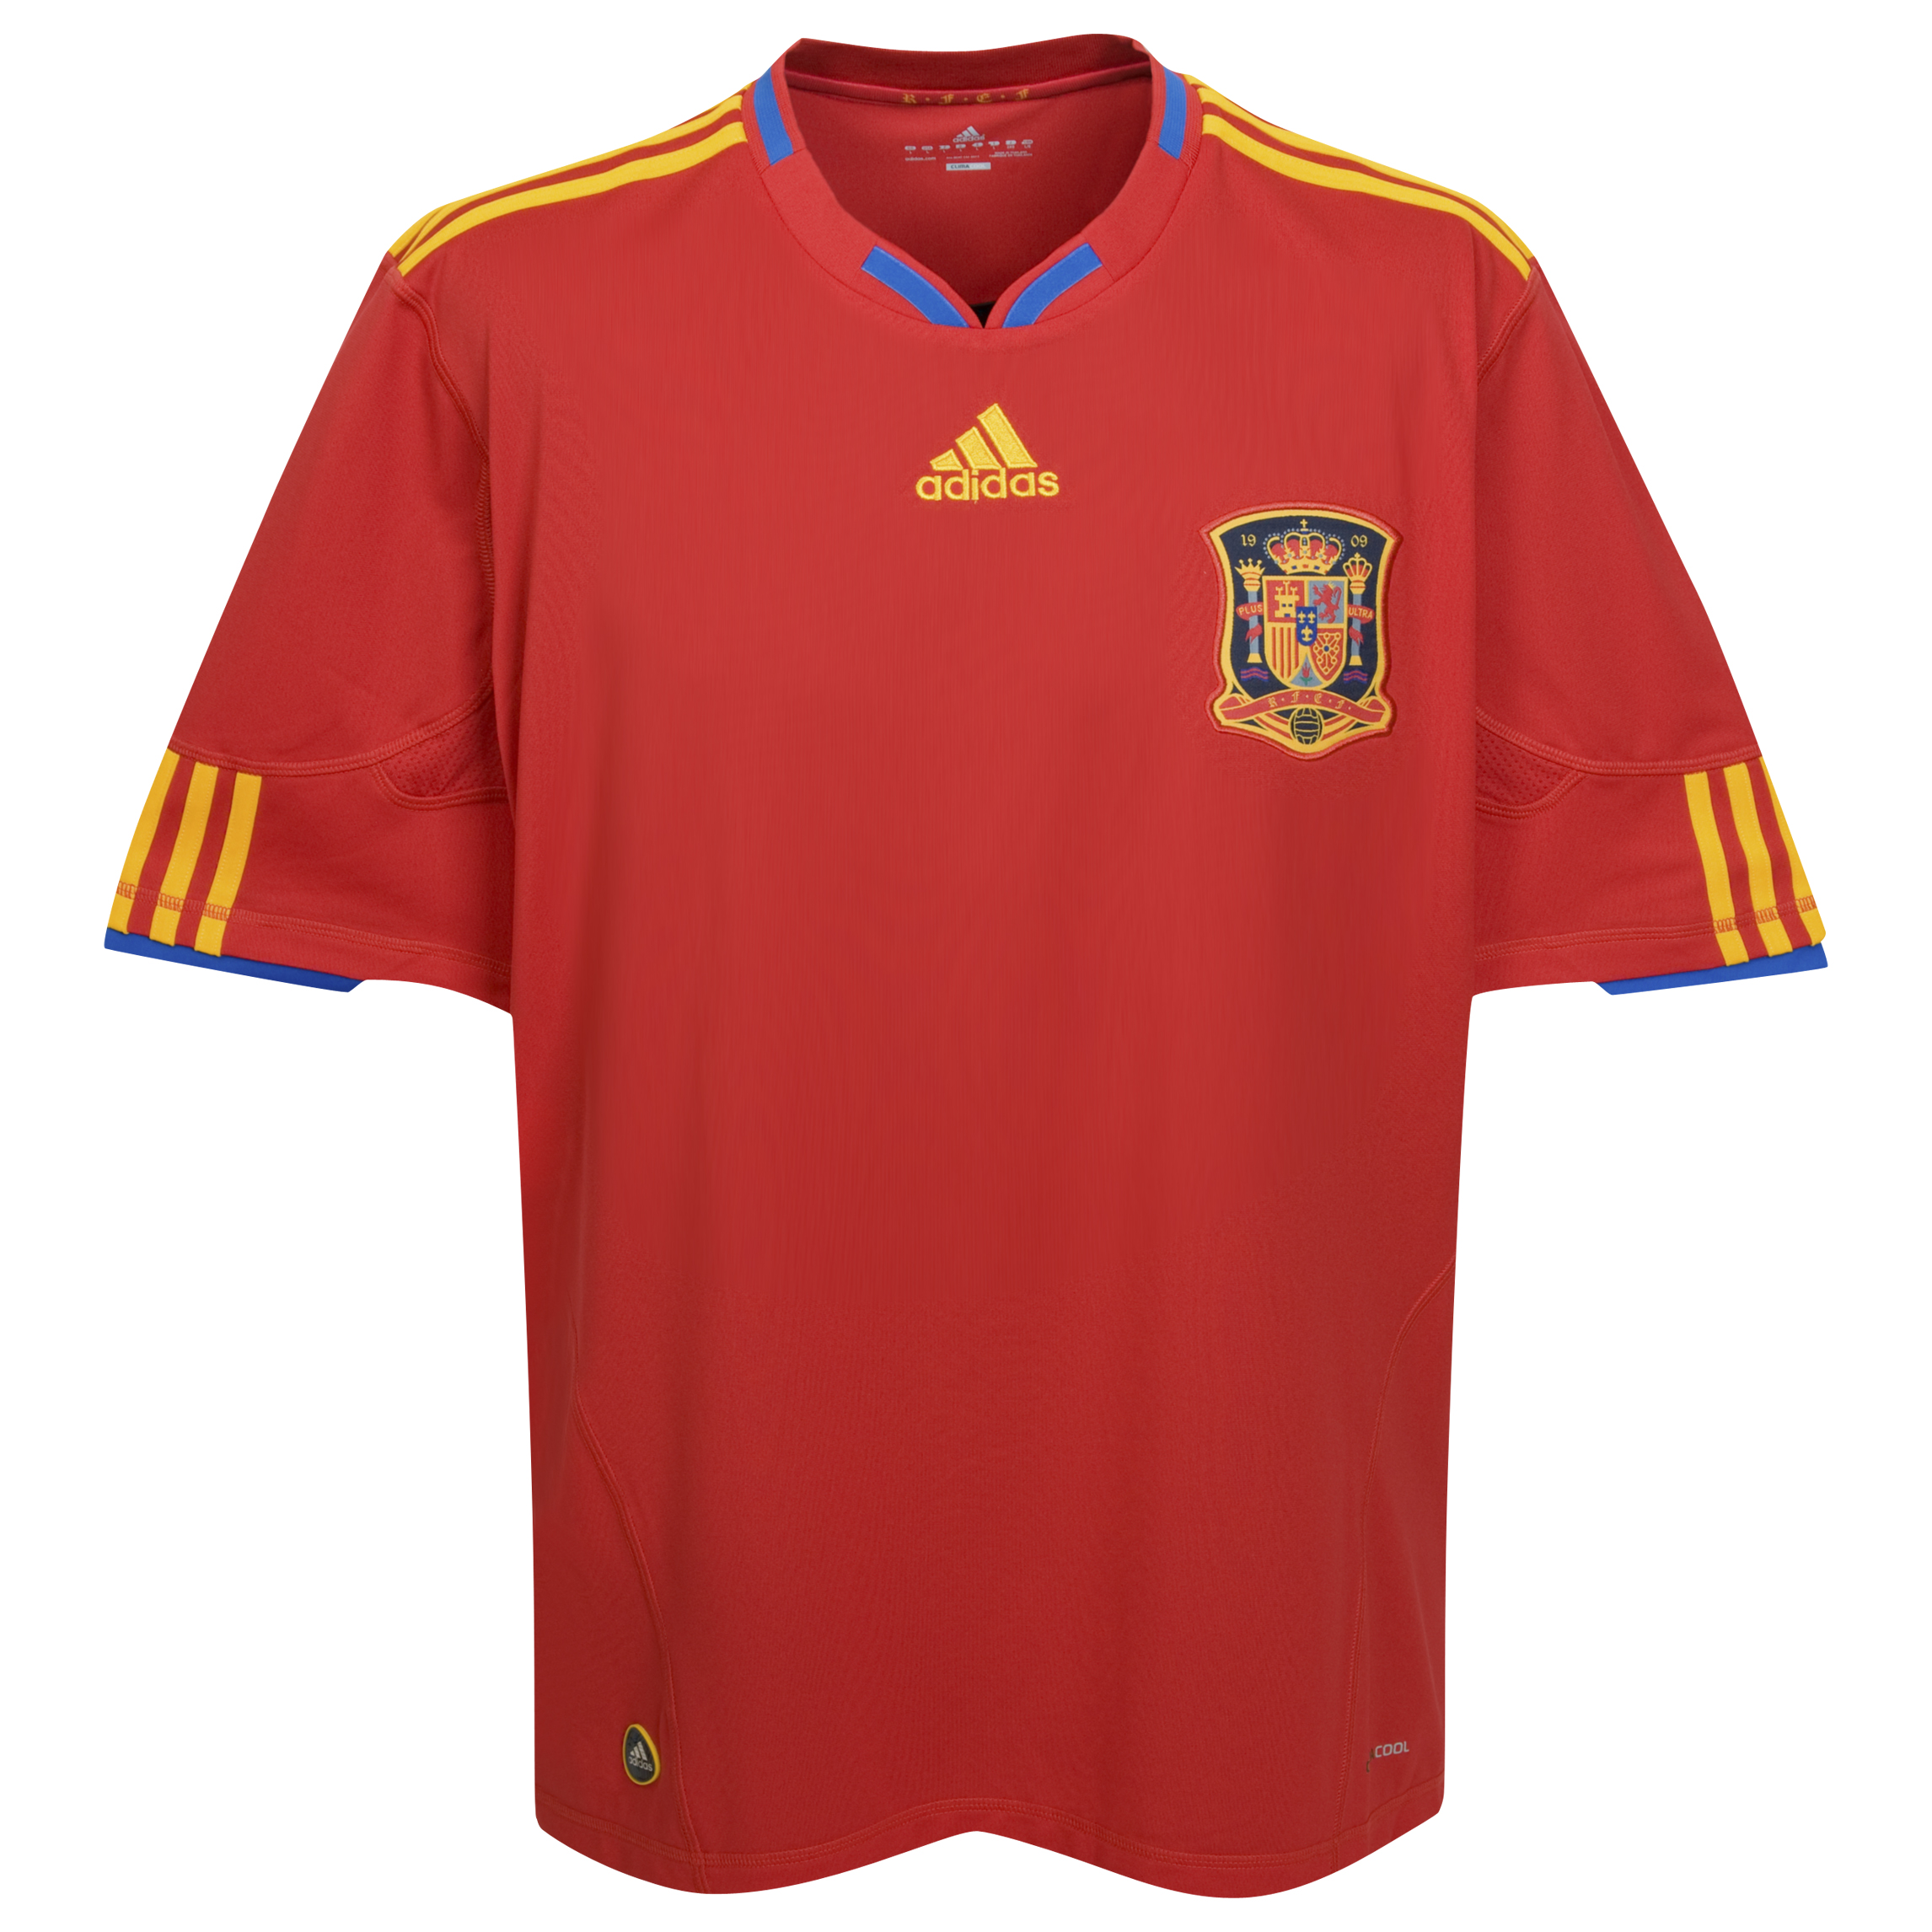 ملابس المنتخبات لكأس العالم ‎(2010)‎ Cfc-63759